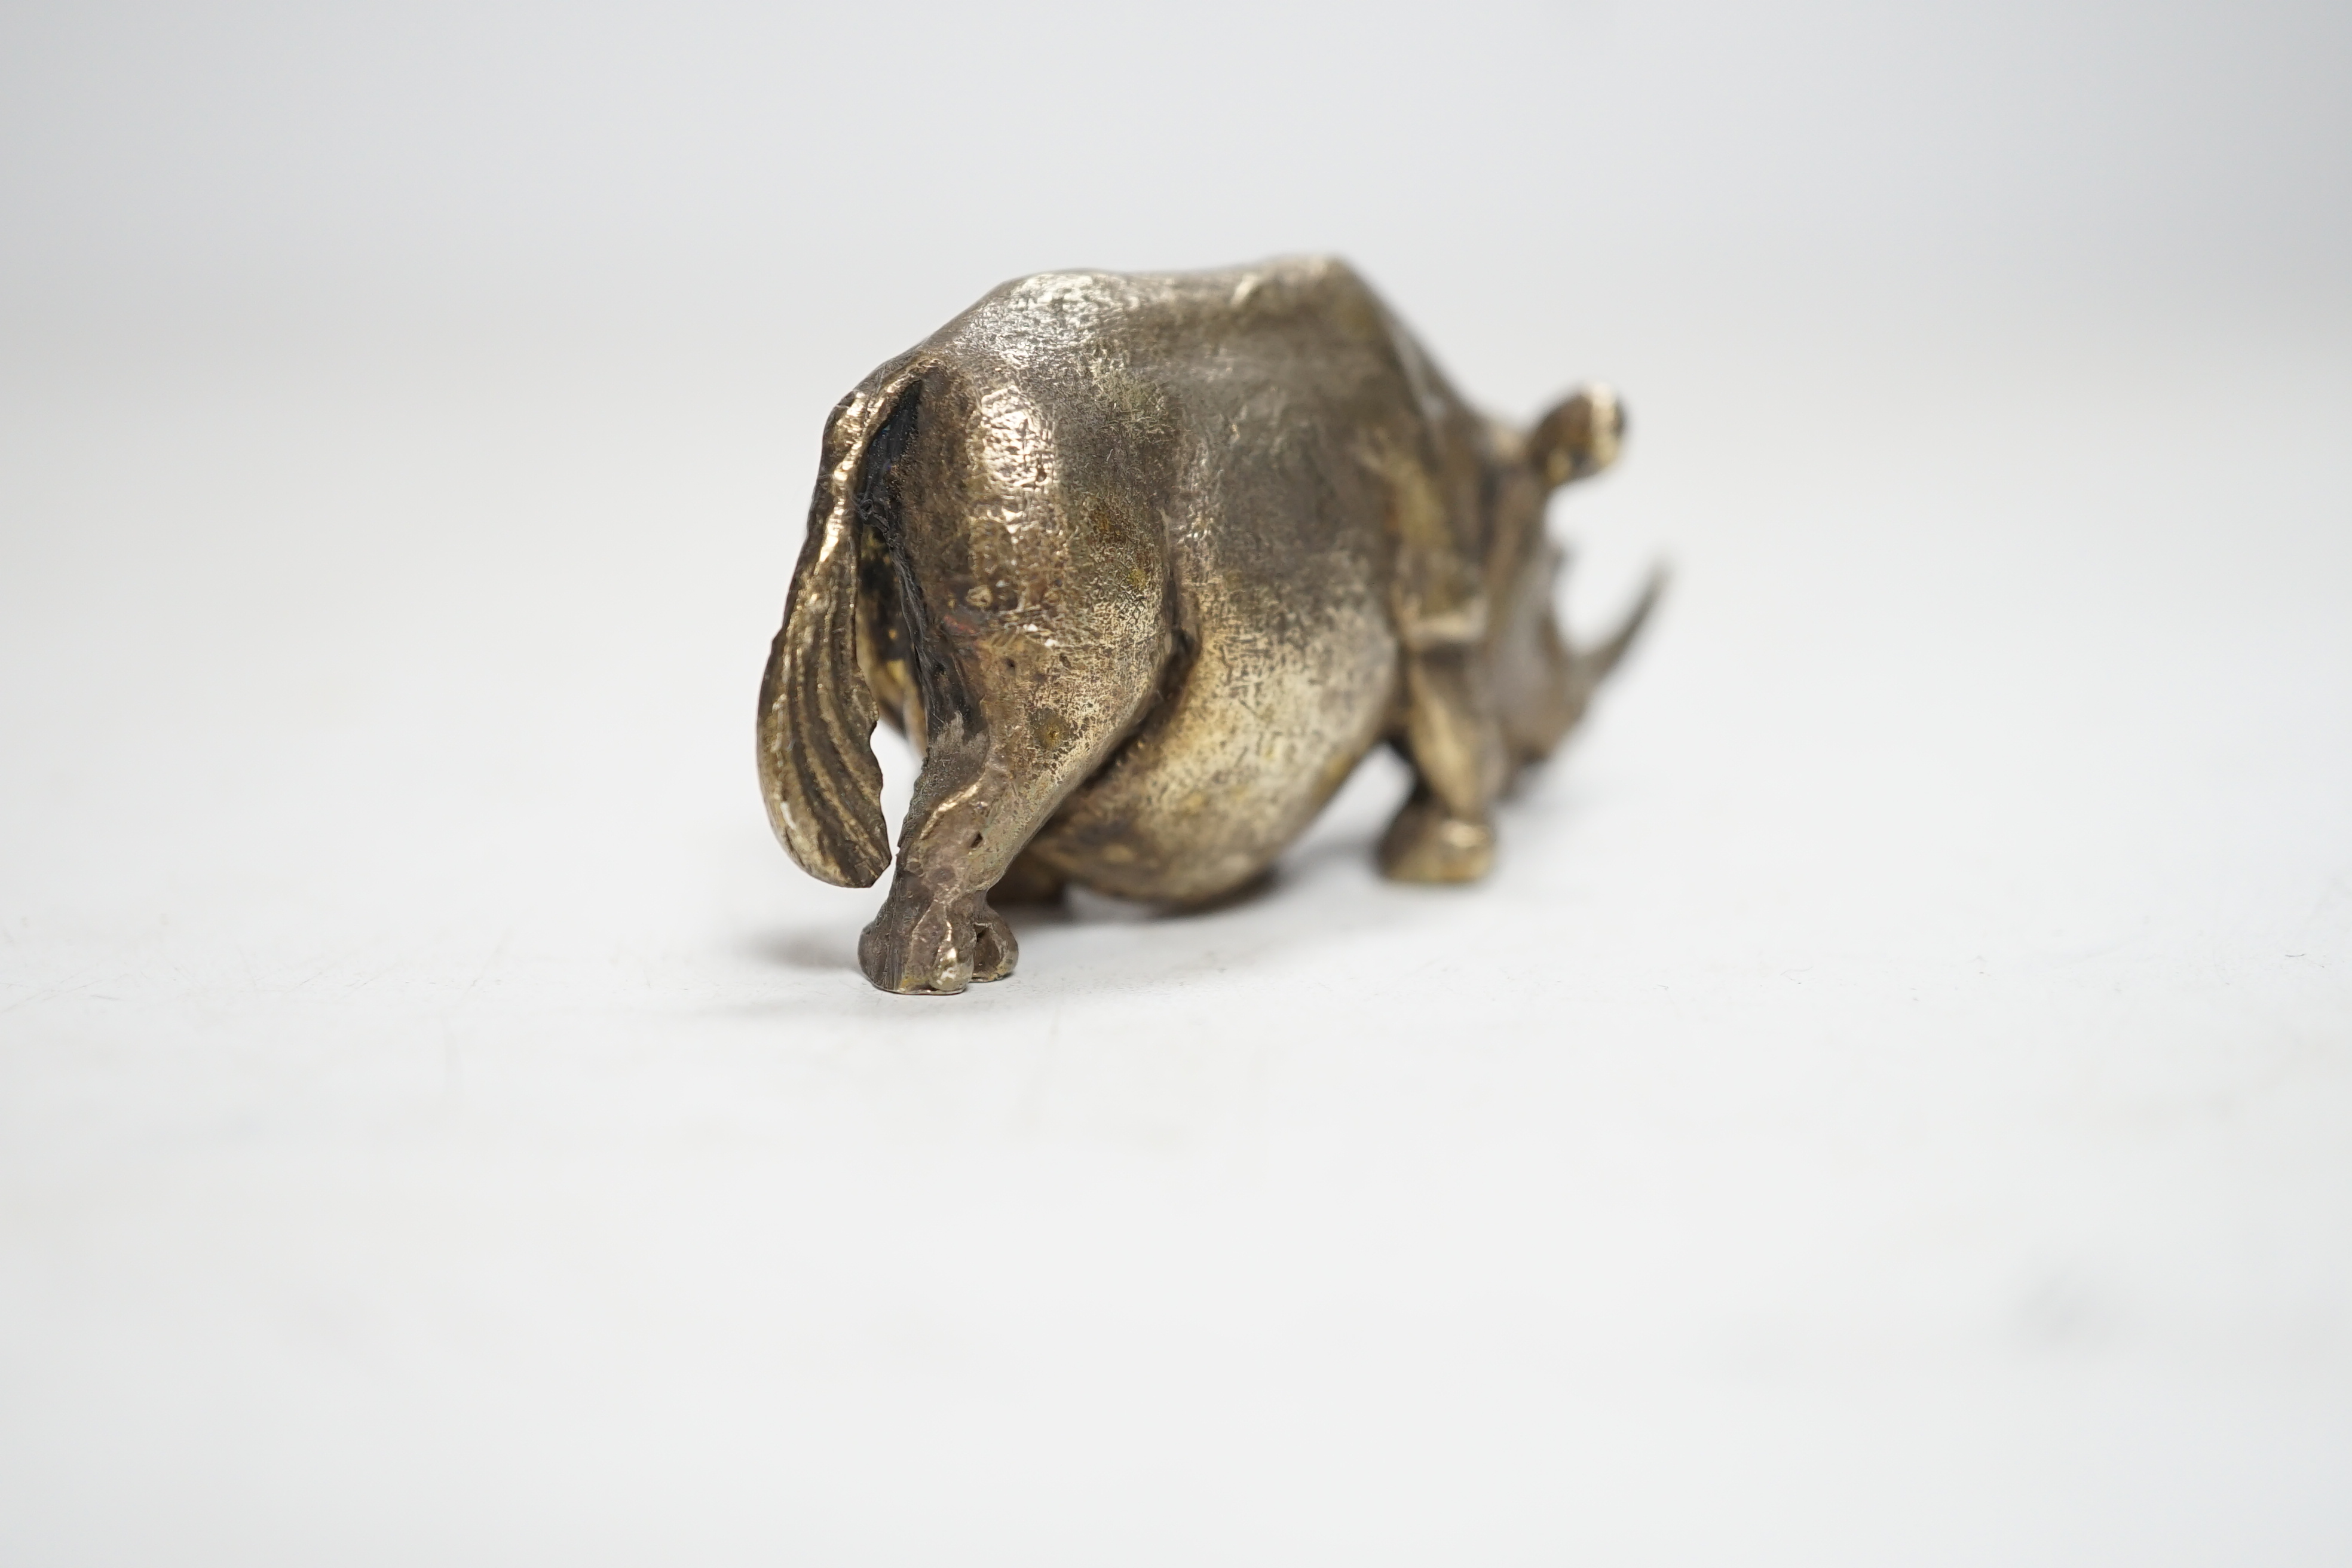 An Elizabeth II silver miniature model of a rhinoceros, by Stuart Devlin, London, 1985, length 55mm.